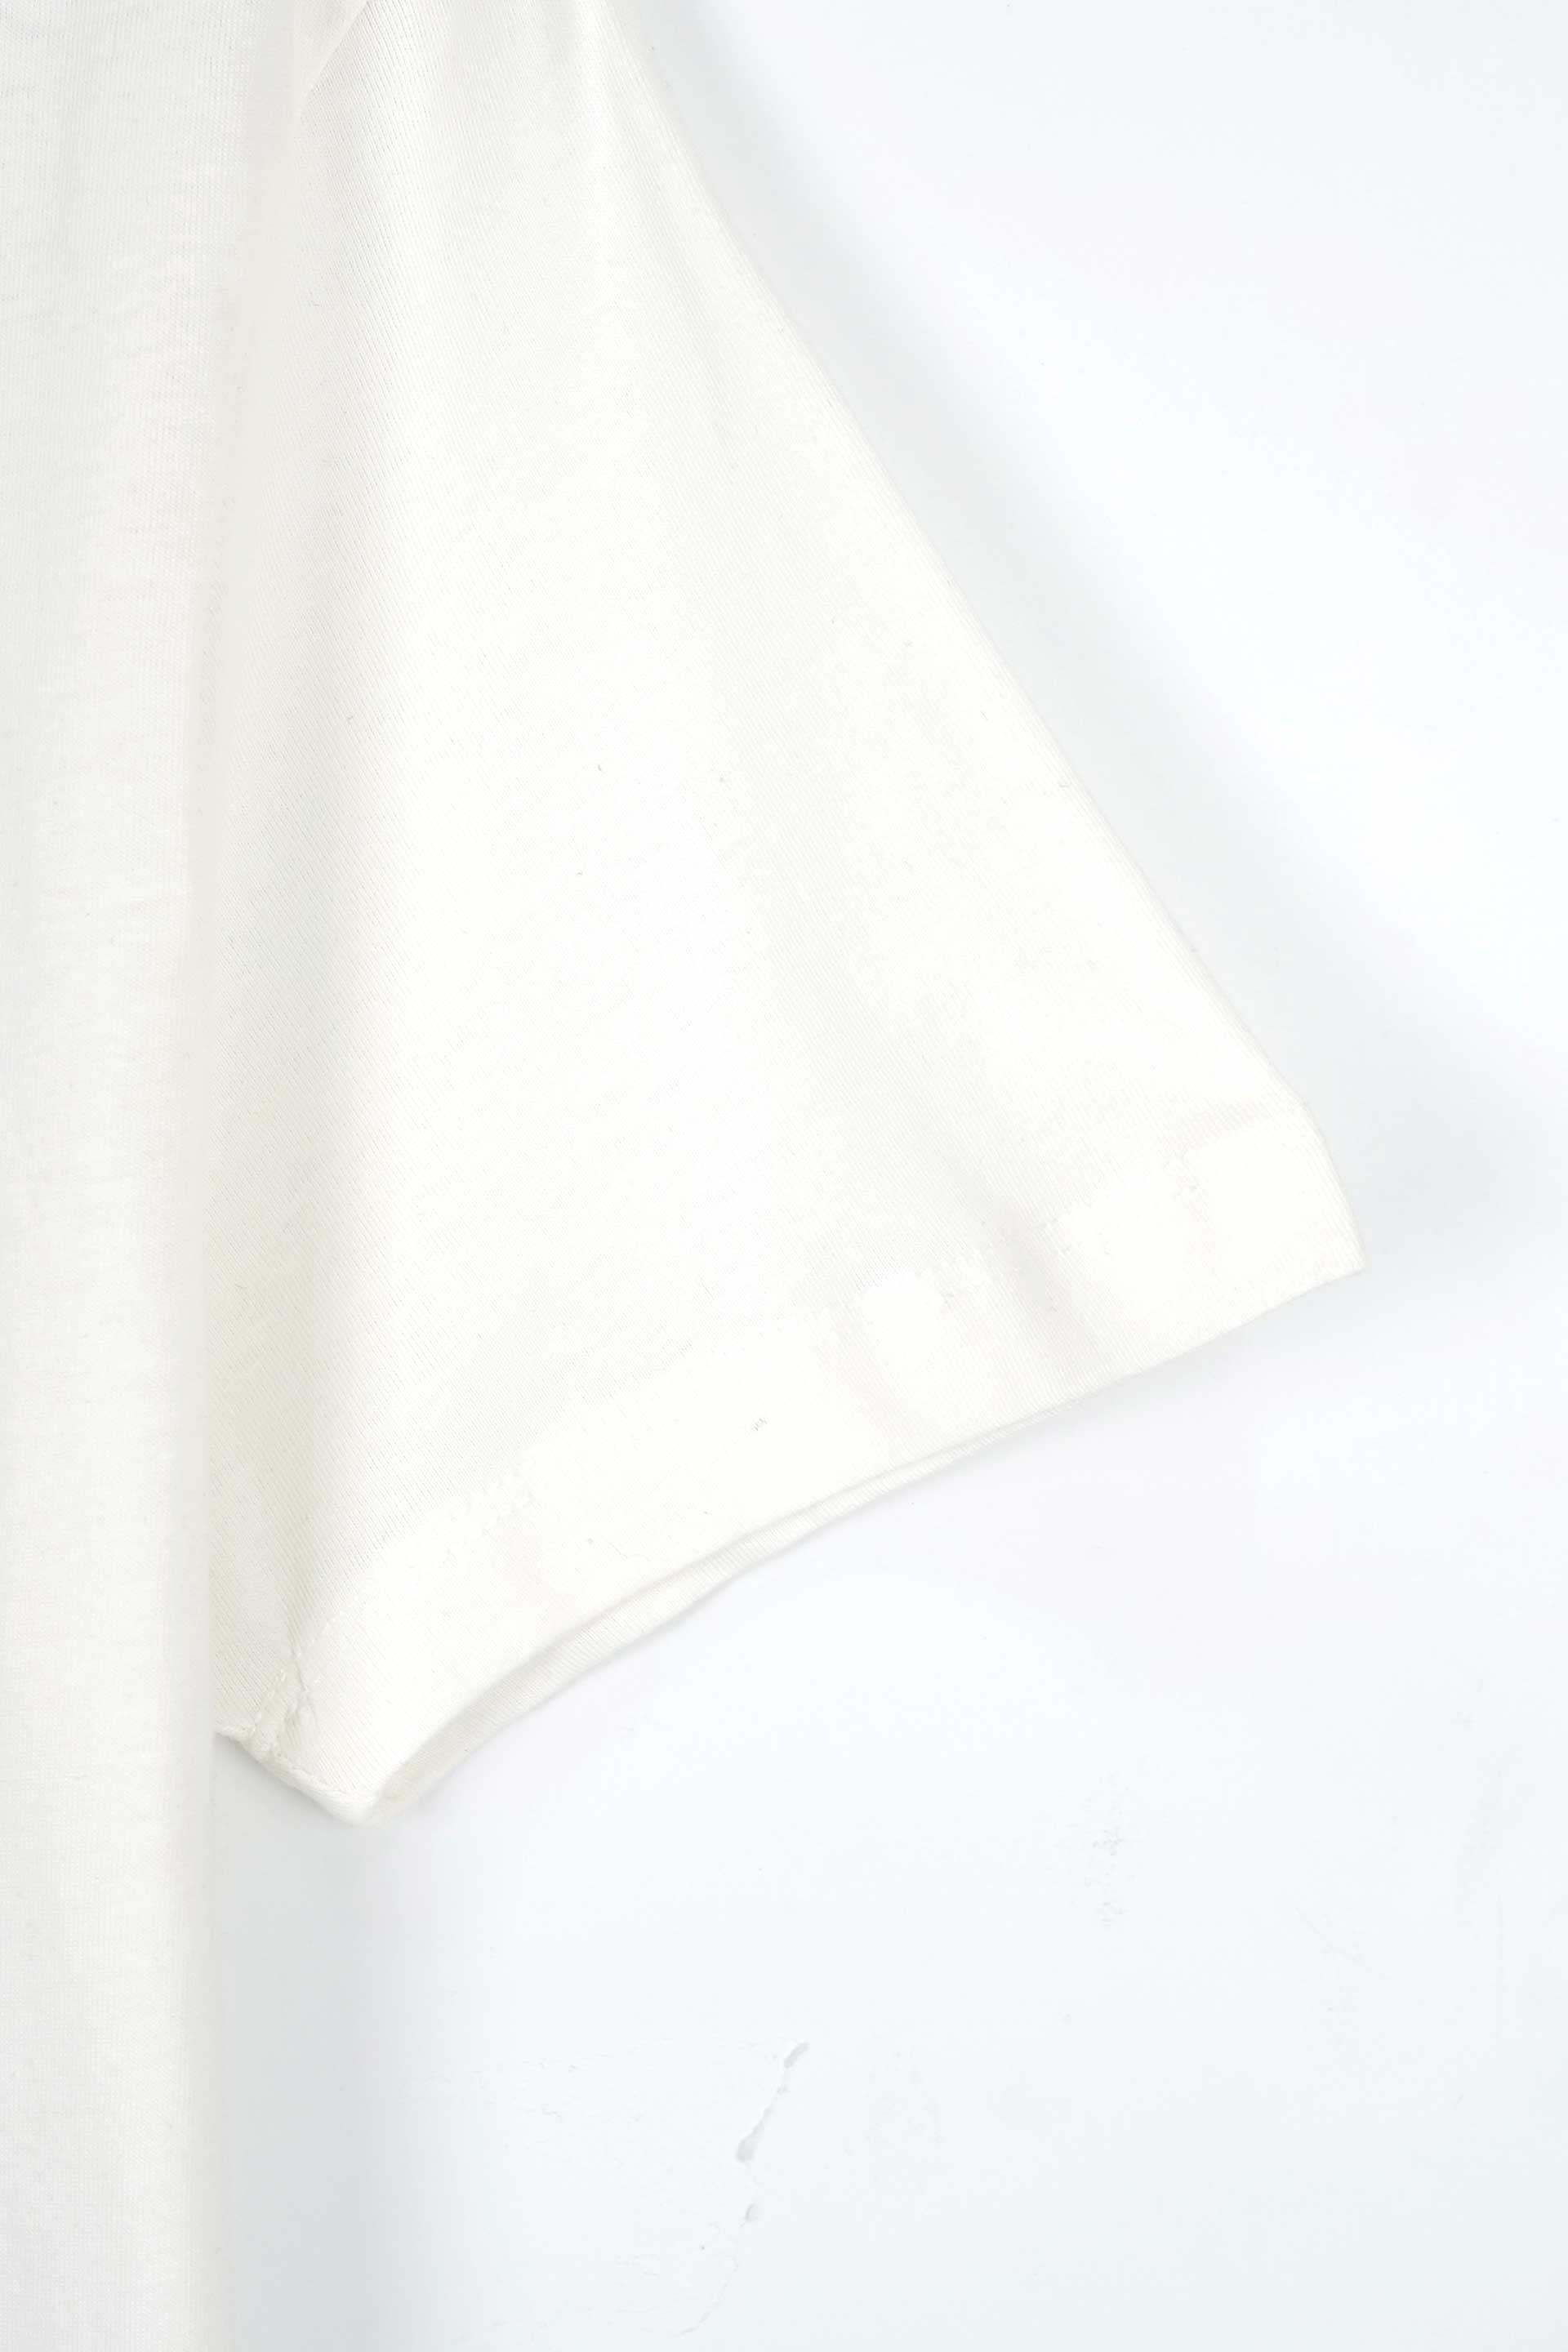 Men Graphic Soft Cotton T-Shirt 002474